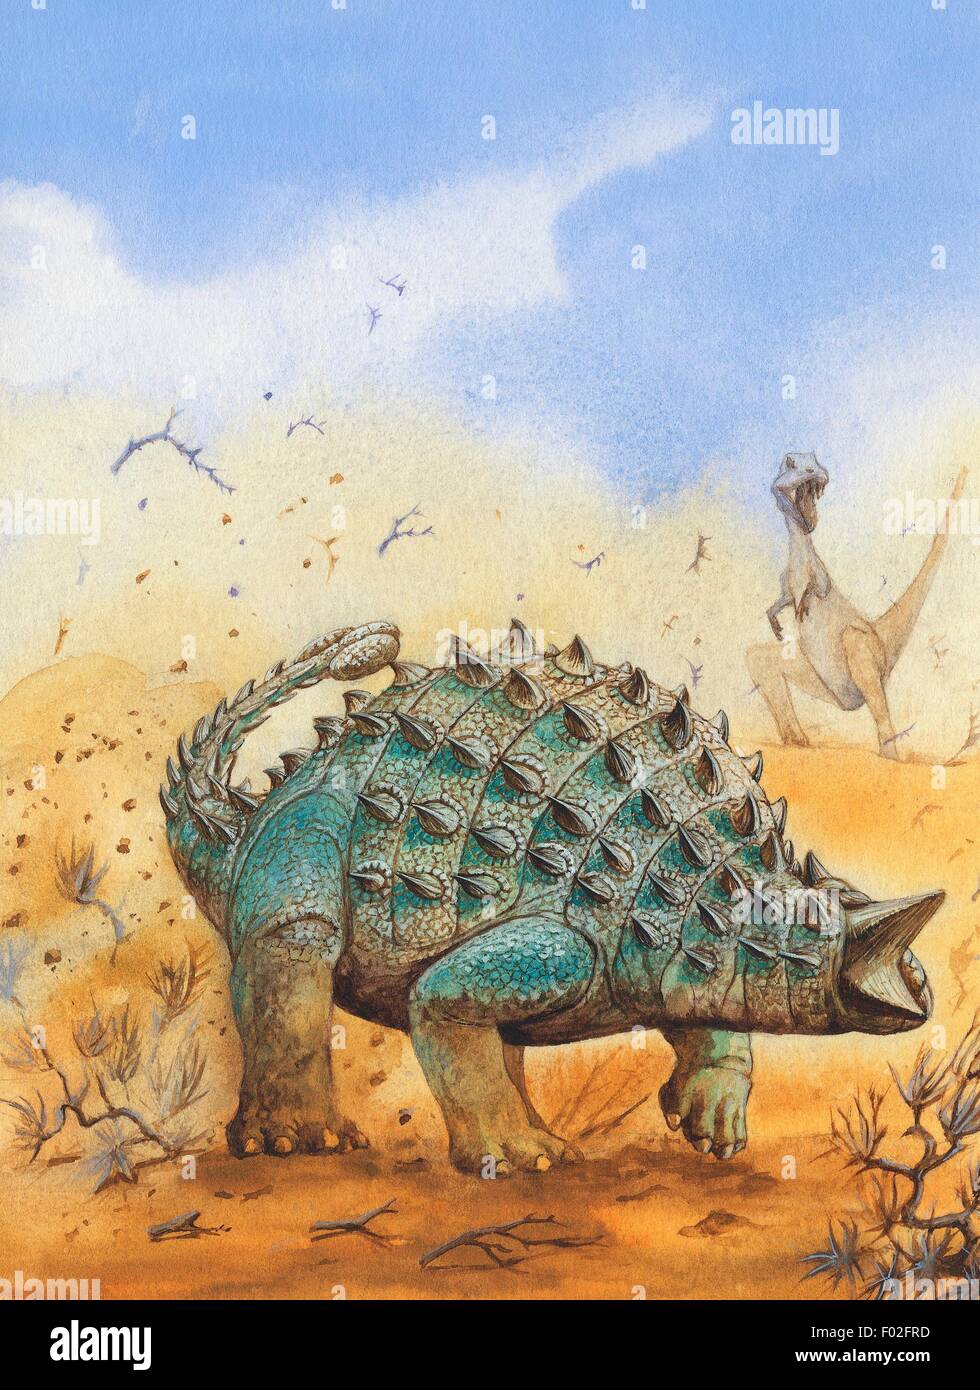 Tarchia gigantea), Ankylosauridae, Late Cretaceous. Illustration. Stock Photo